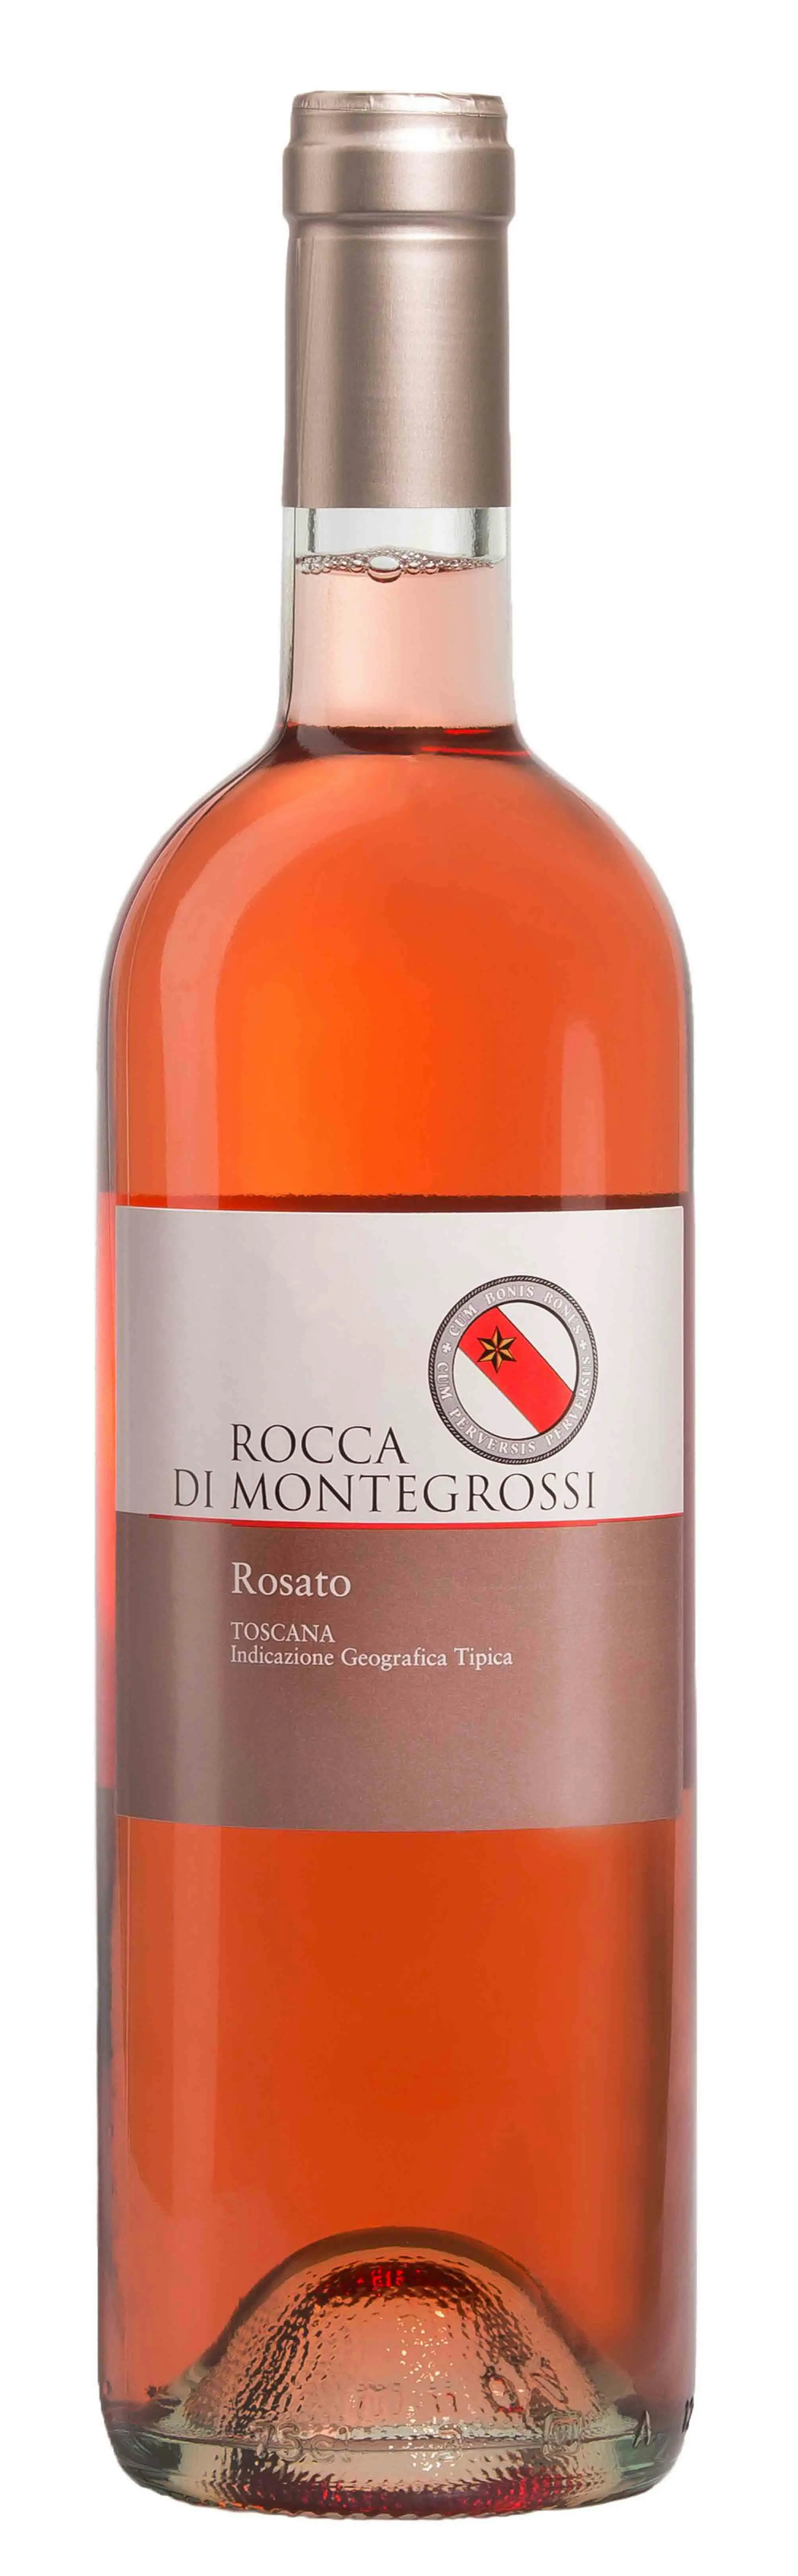 Image of Rocca di Montegrossi, Rosato di Toscana 2020